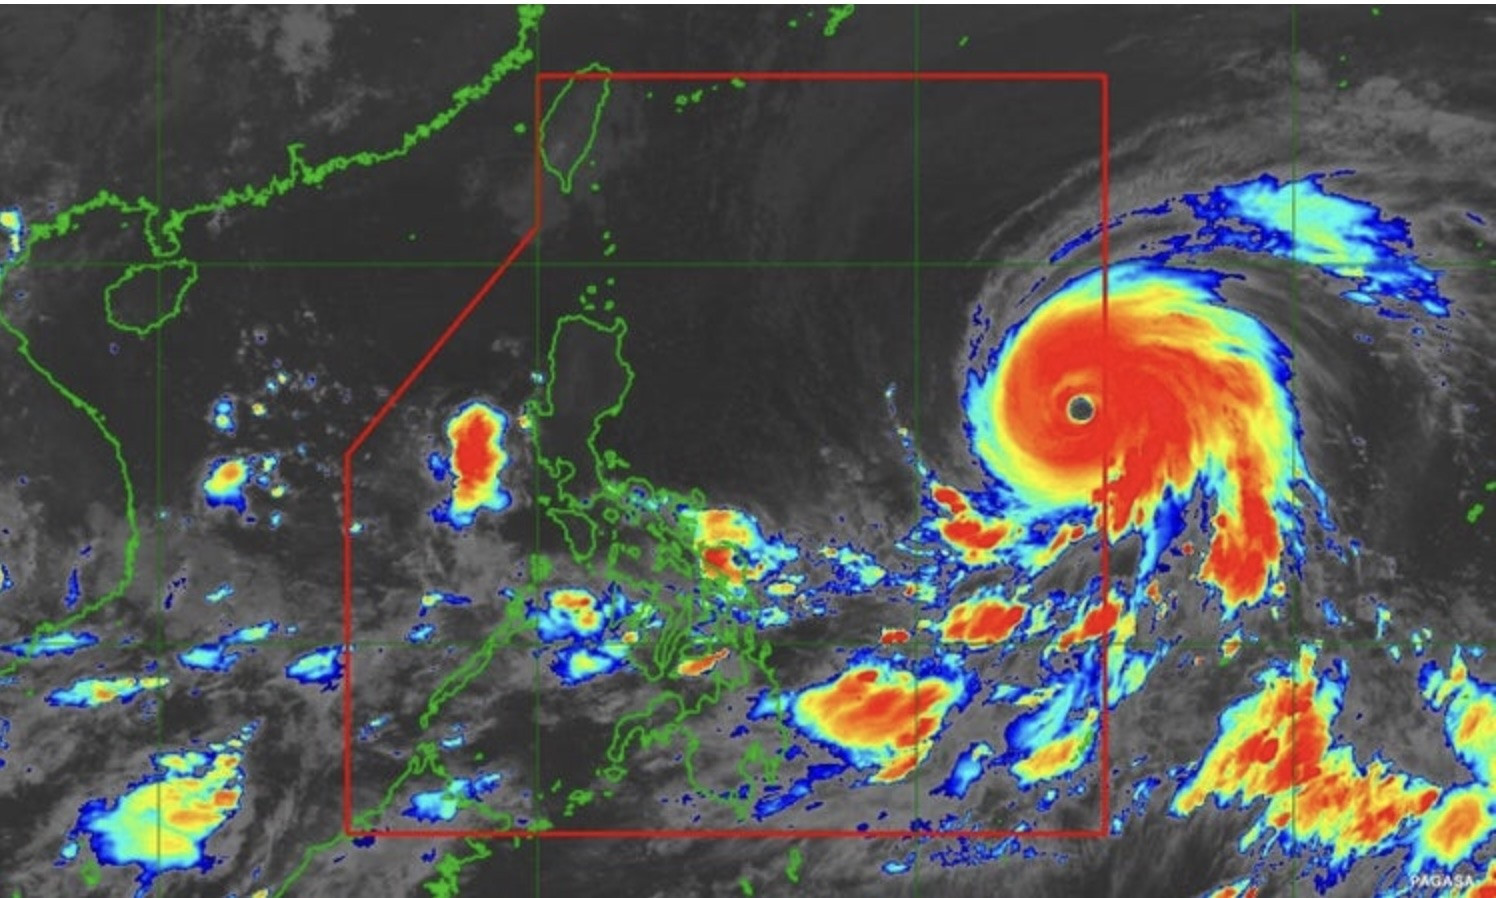 Siêu bão mạnh nhất thế giới 3 năm qua sắp đổ bộ Philippines